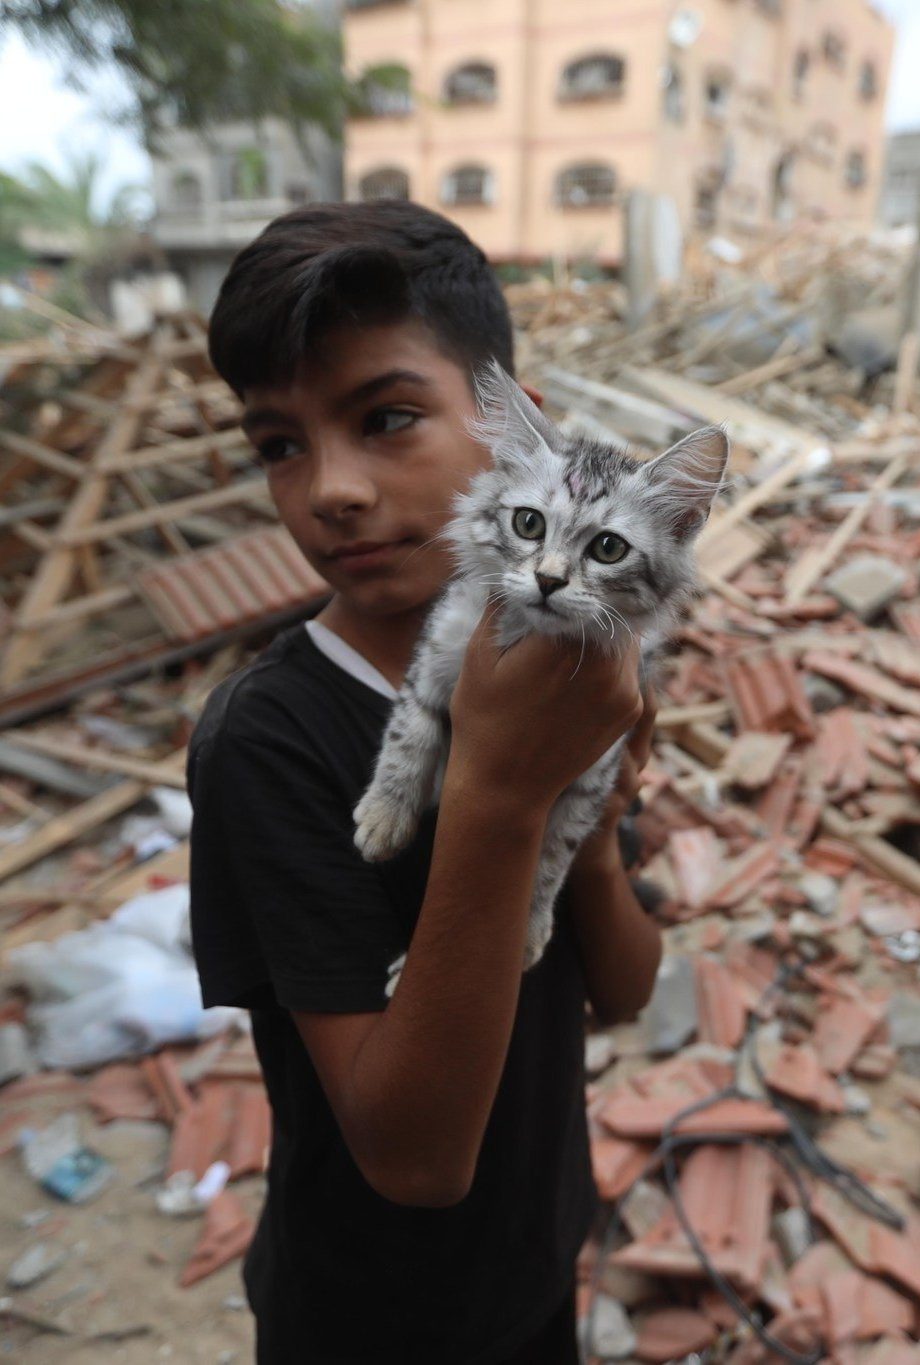 6-manieren-om-de-slachtoffers-in-gaza-en-israel-te-helpen-271899